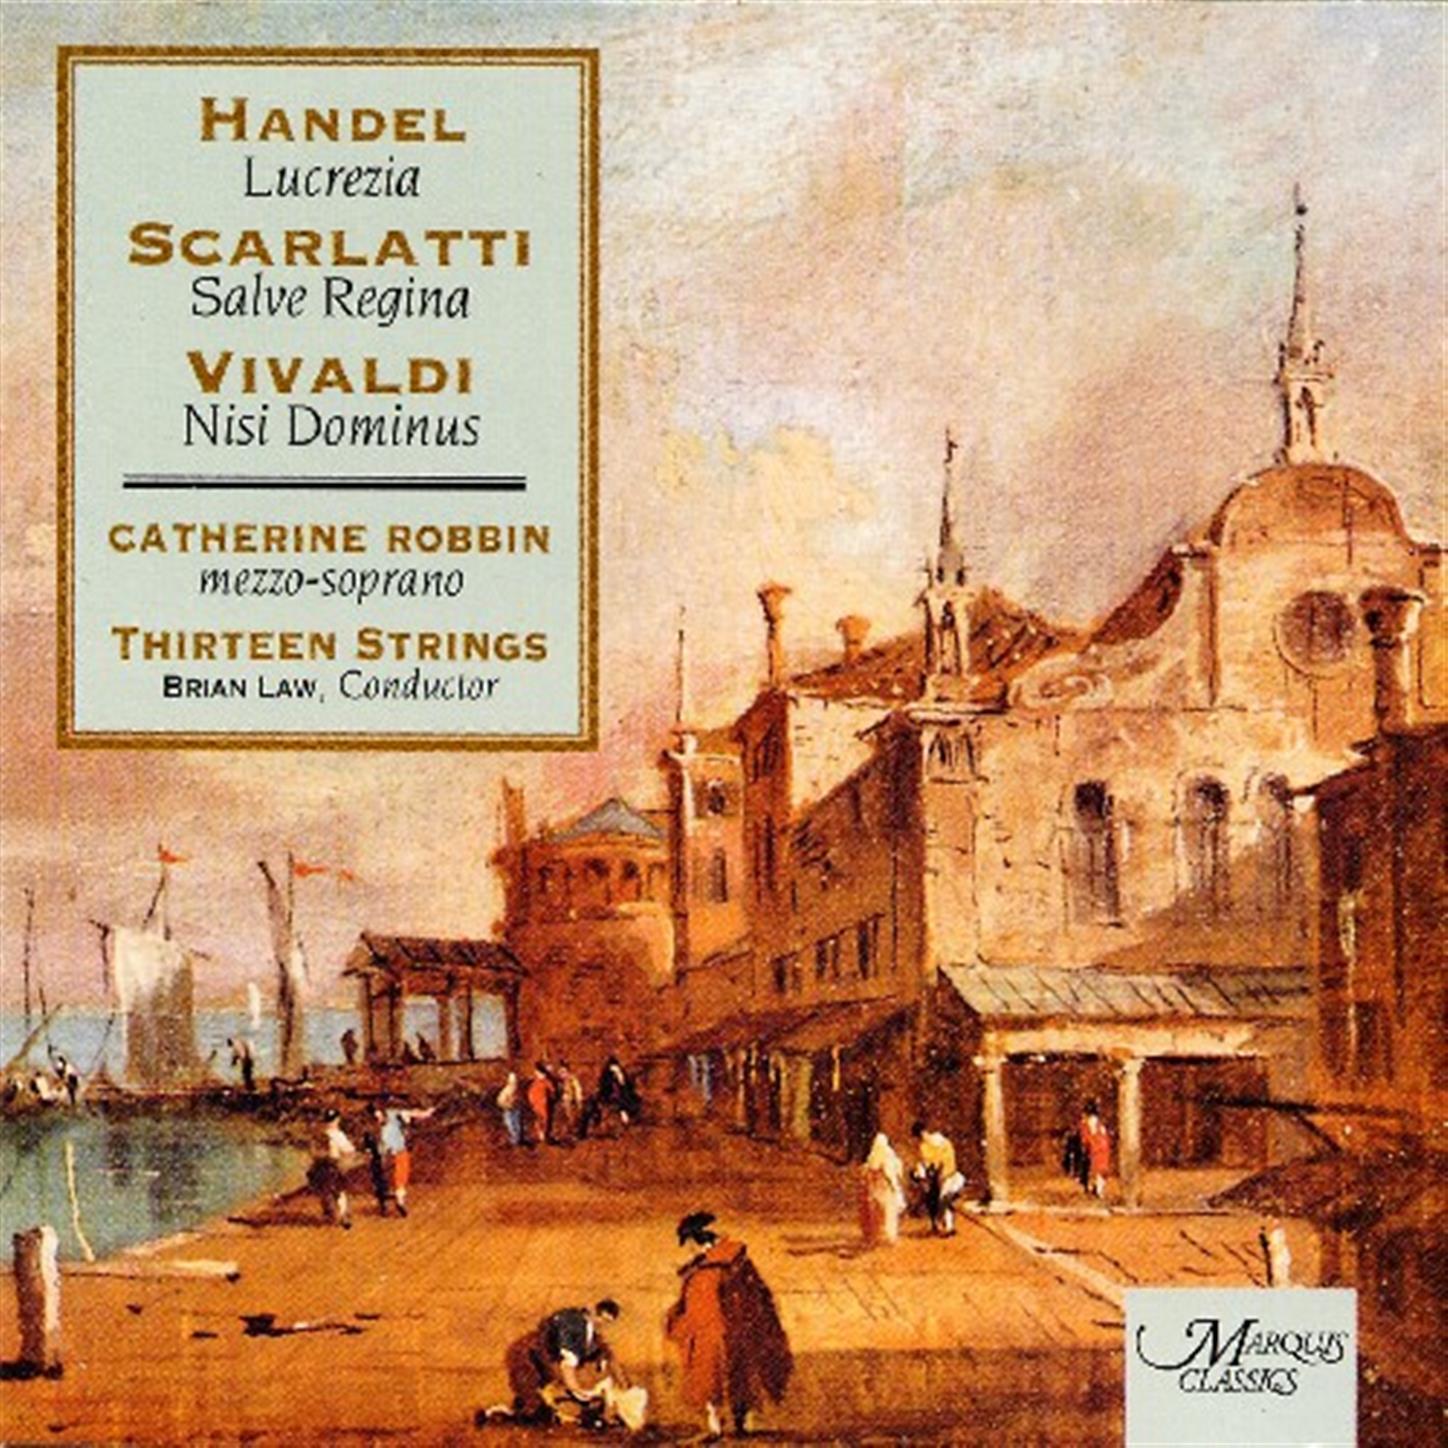 Handel, Scarlatti And Vivaldi